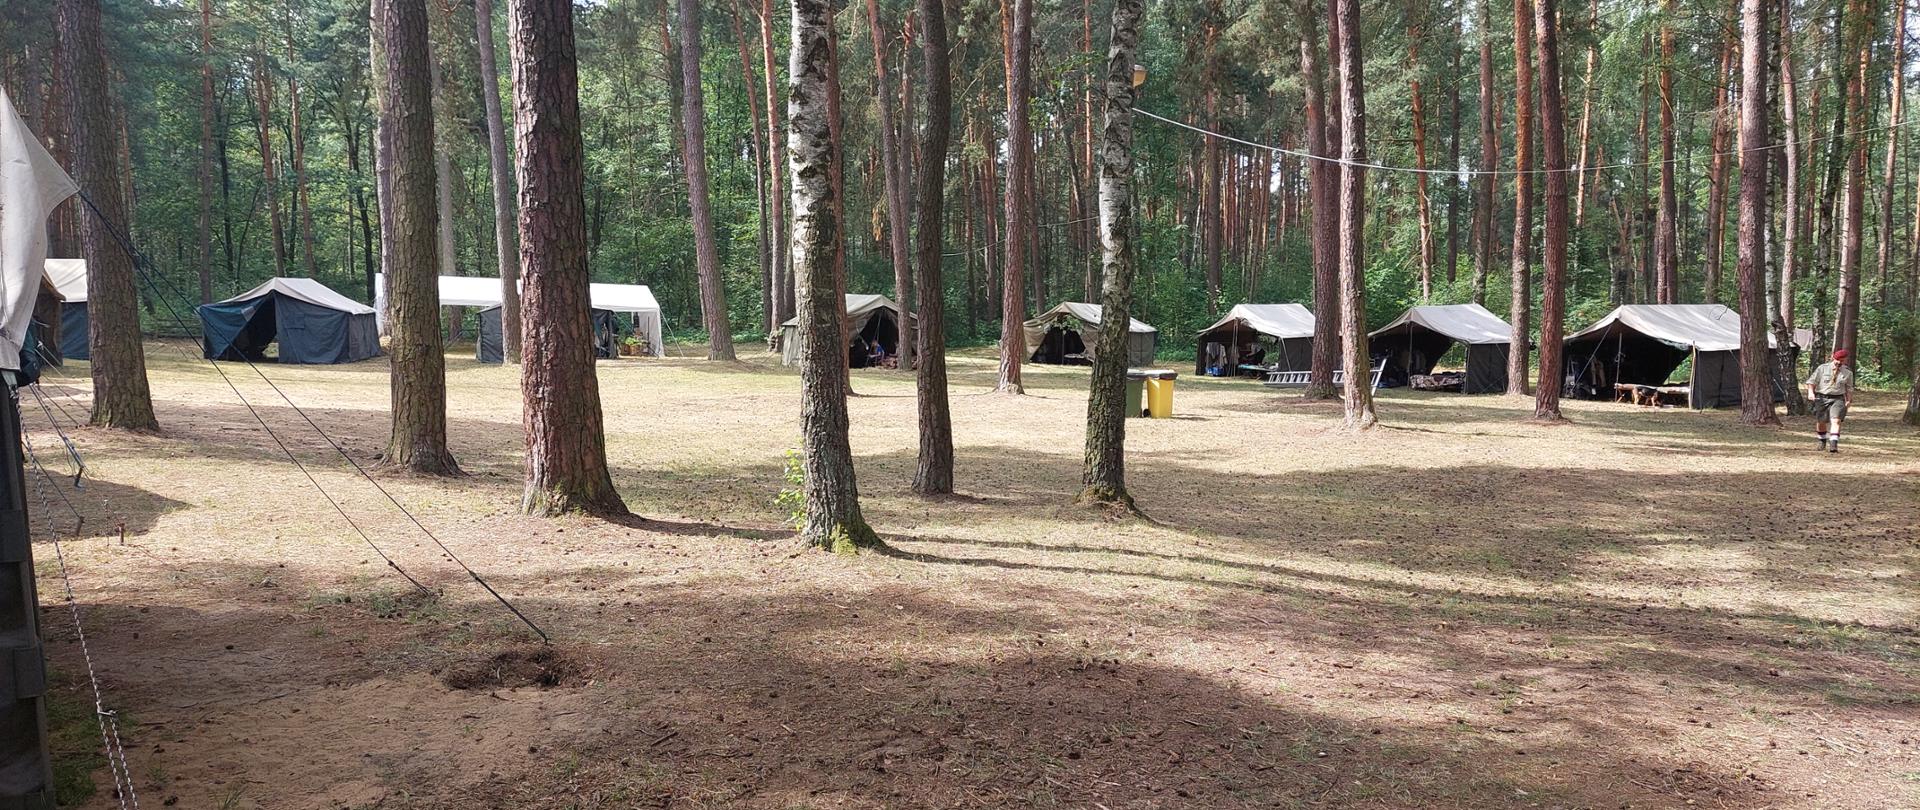 Zdjęcie przestawia rozbity obóz harcerski w lesie, 8 namiotów wśród drzew